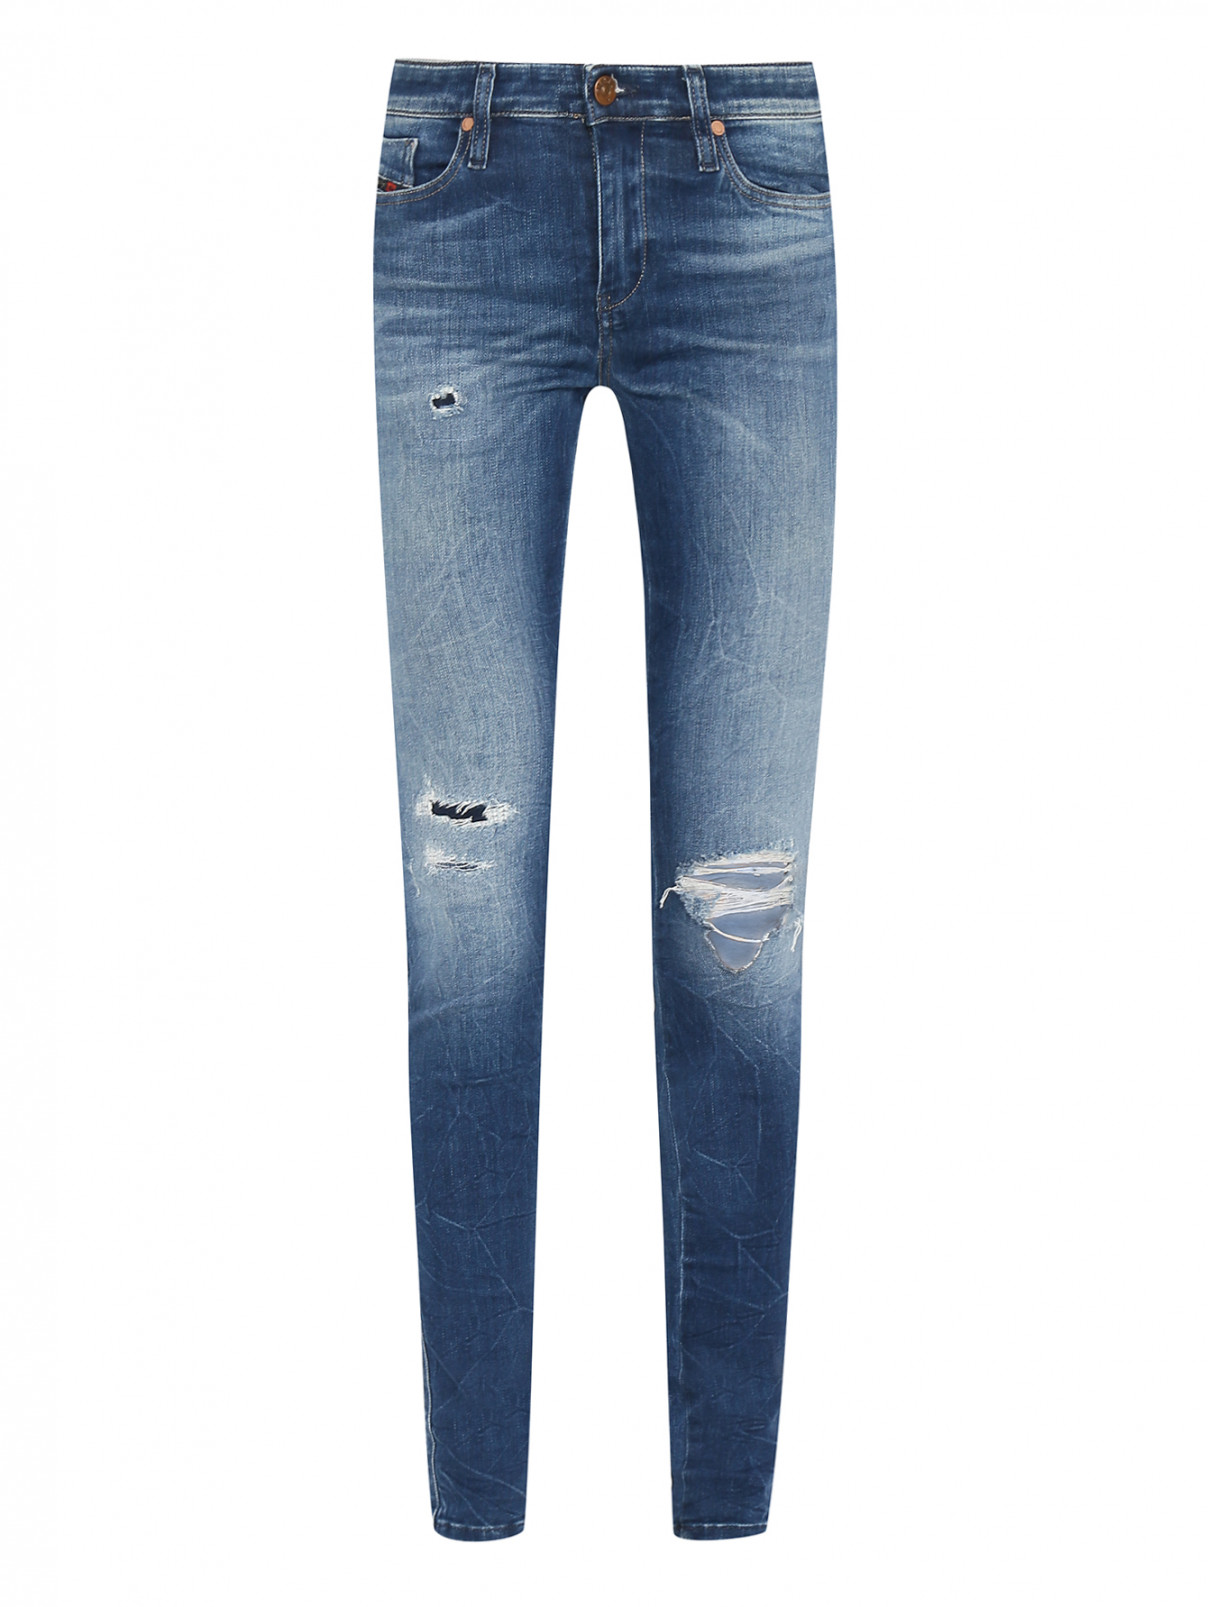 Узкие джинсы с эффектом потертости и рваности Diesel  –  Общий вид